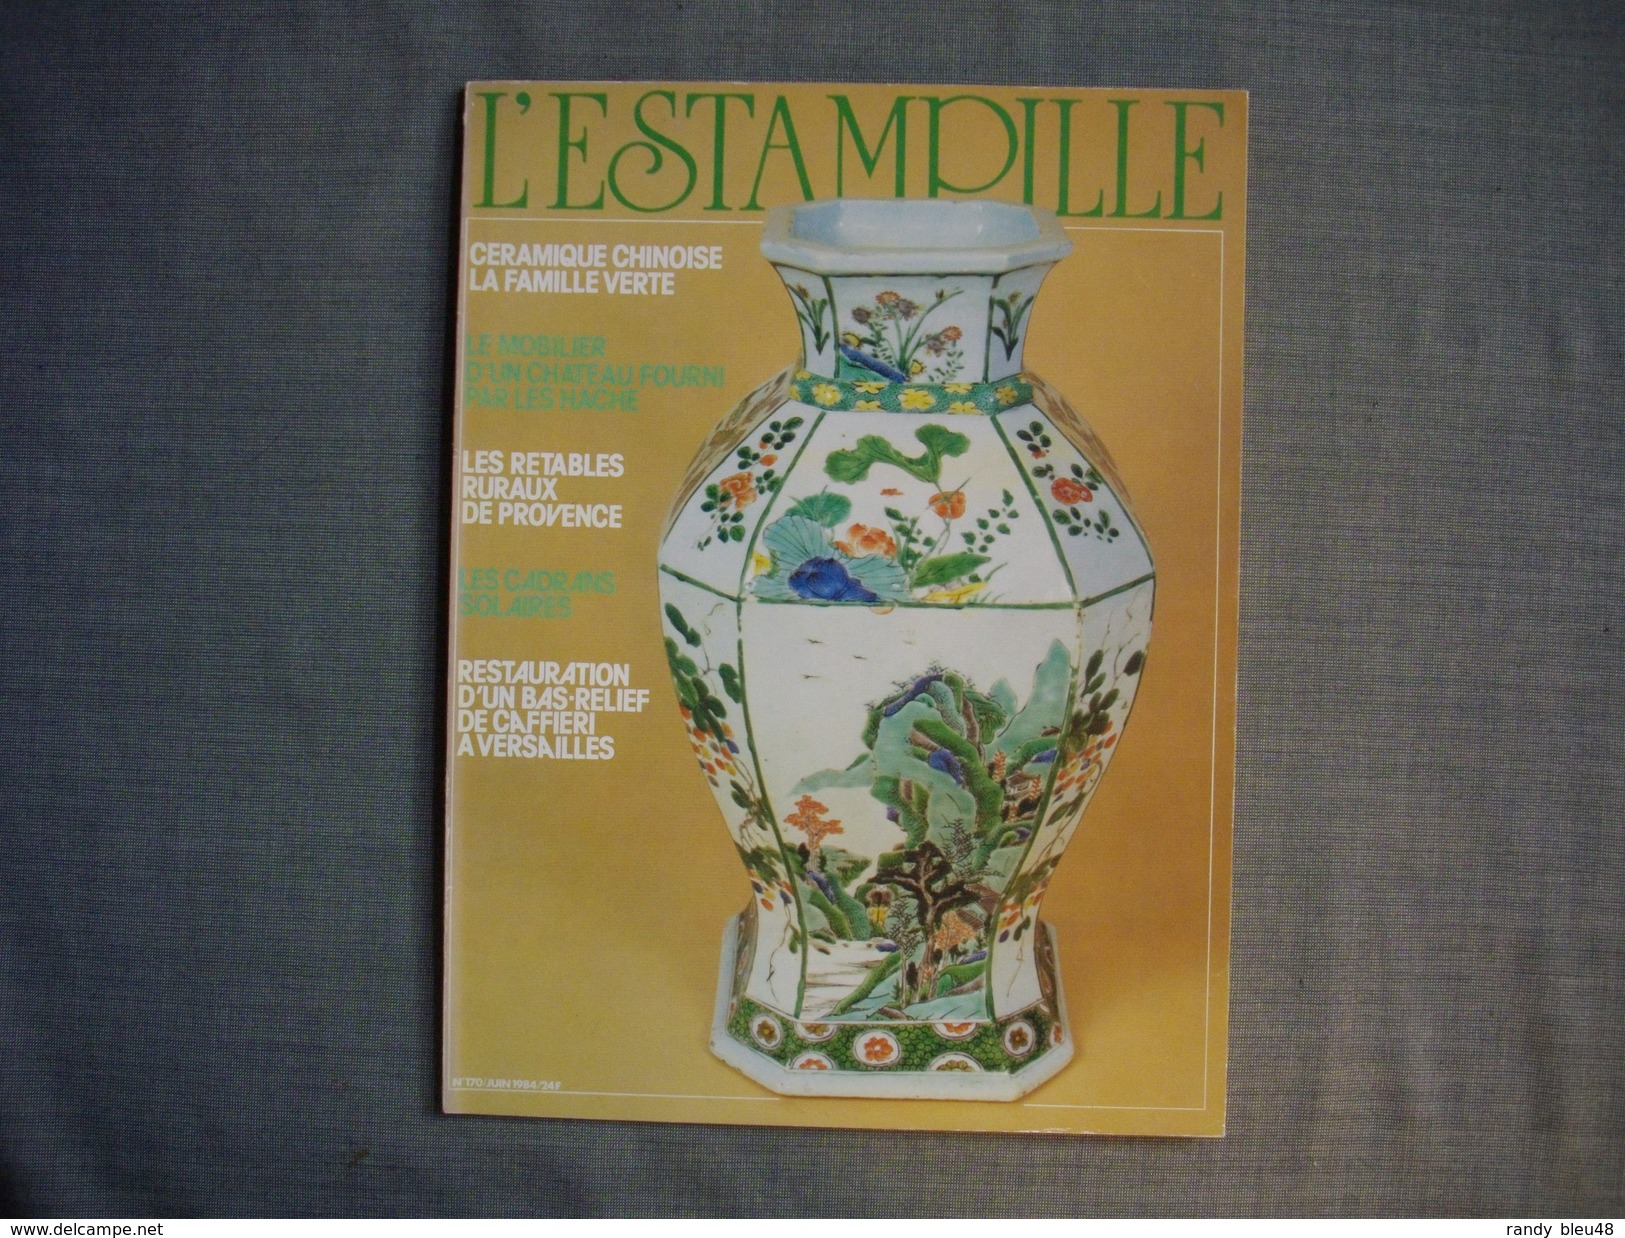 L'ESTAMPILLE  ( L'objet D'Art )  N° 170  - 1984 -  Céramique Chinoise  -  Les HACHE  -  Les Retables De Provence - Collectors